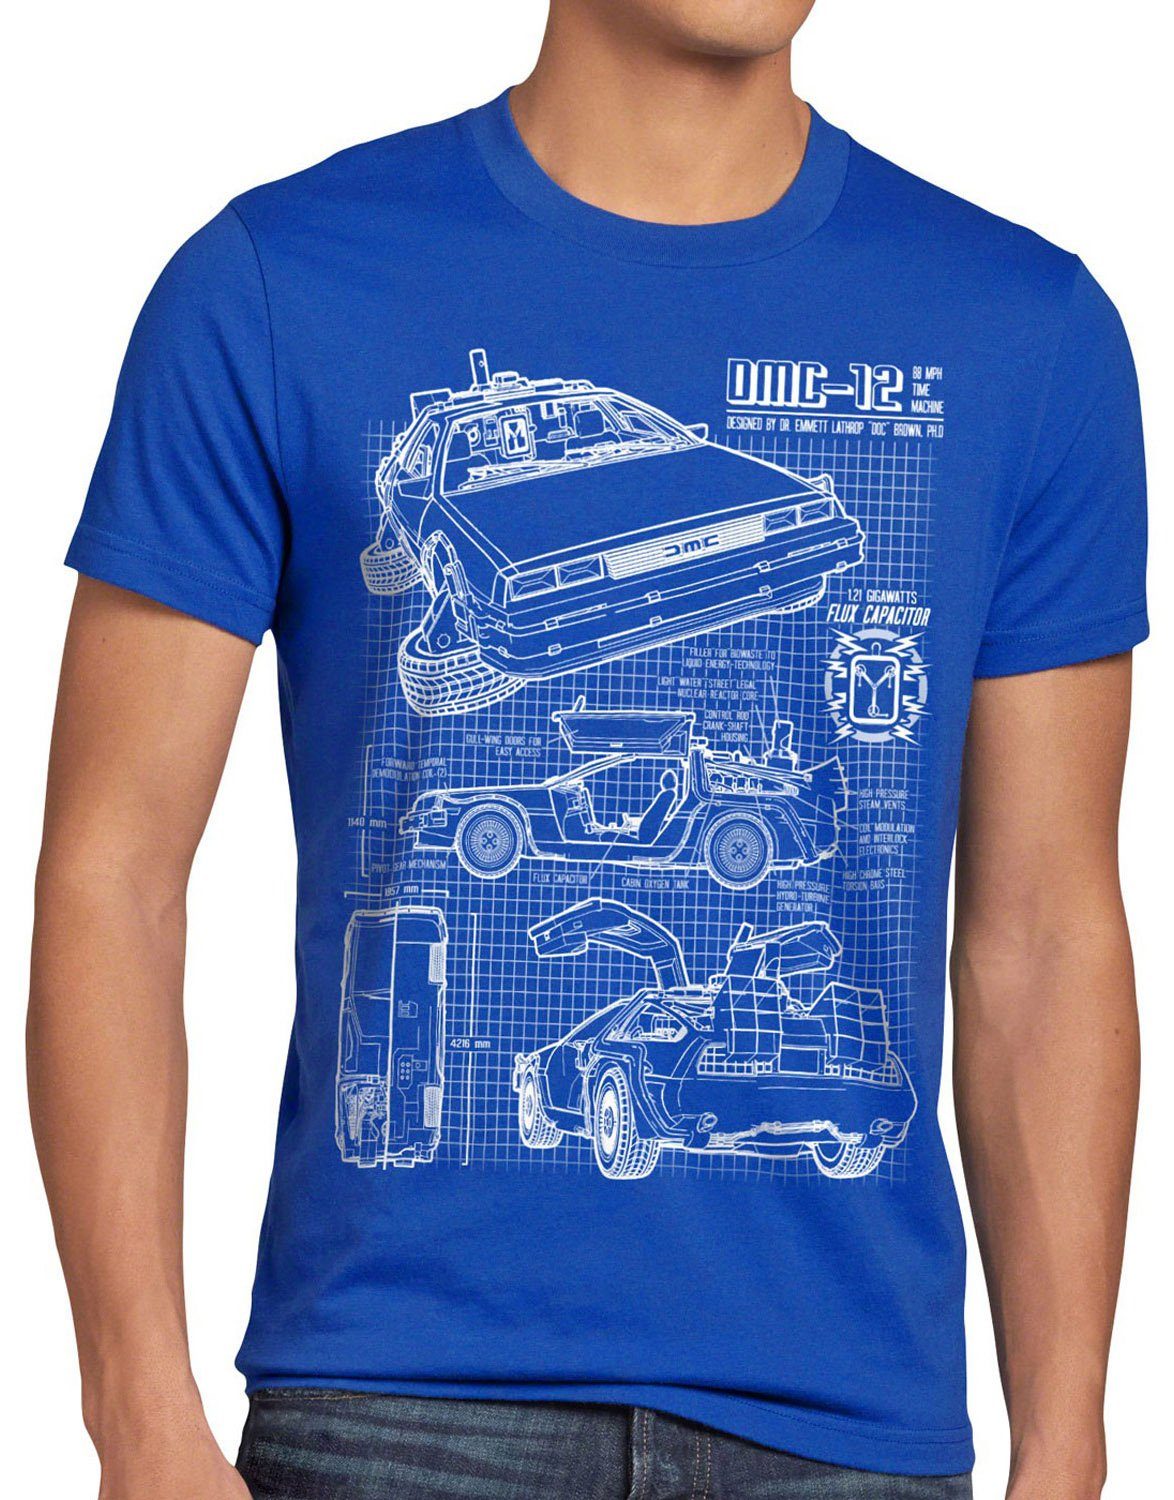 style3 Print-Shirt Herren T-Shirt Delorean DMC-12 zurück zukunft in die to the future back bluray blau